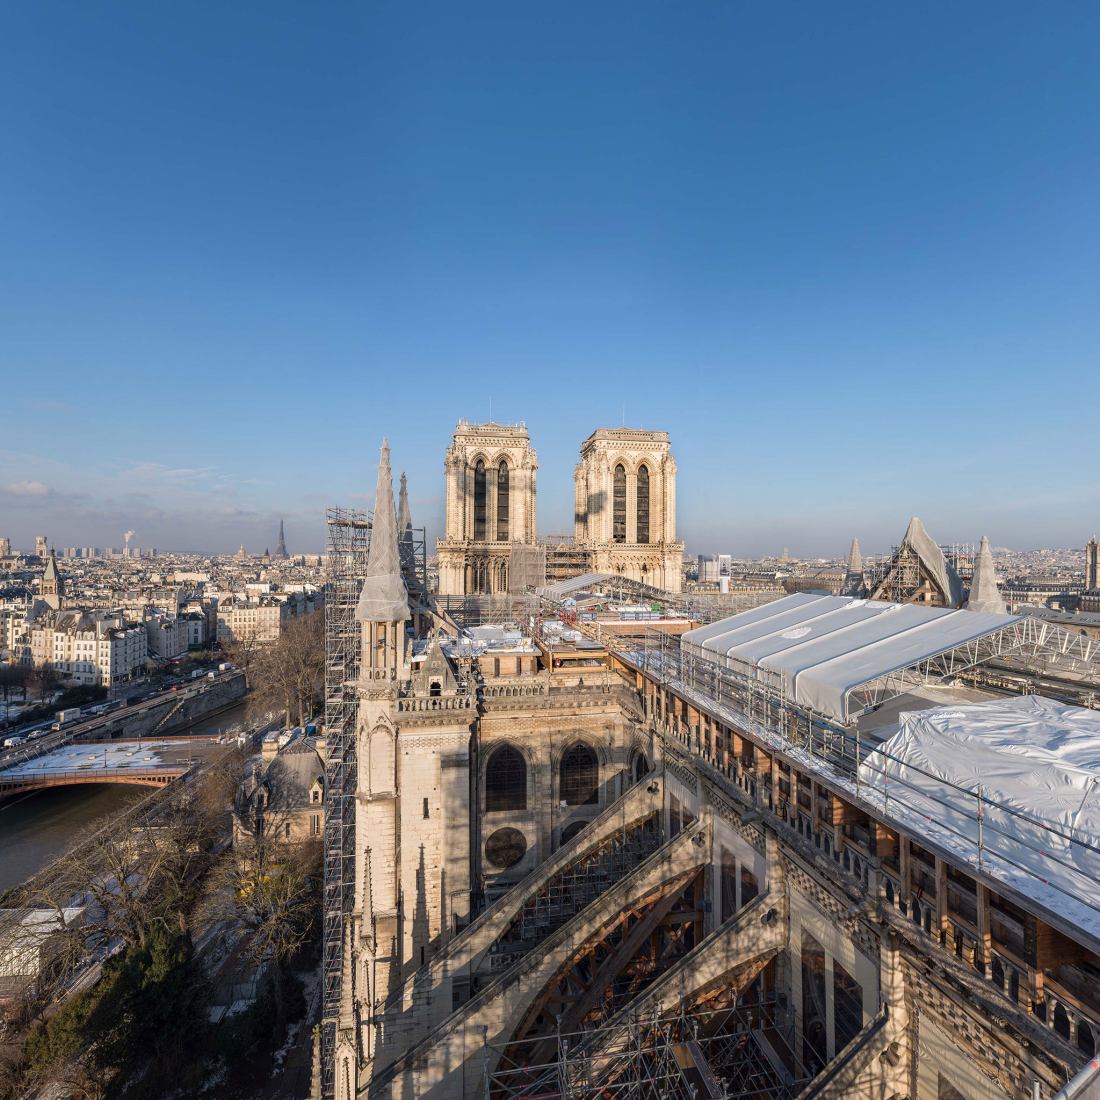 Exposición interactiva dedicada a la historia de Notre-Dame de París. Fotografía cortesia por Histovery.